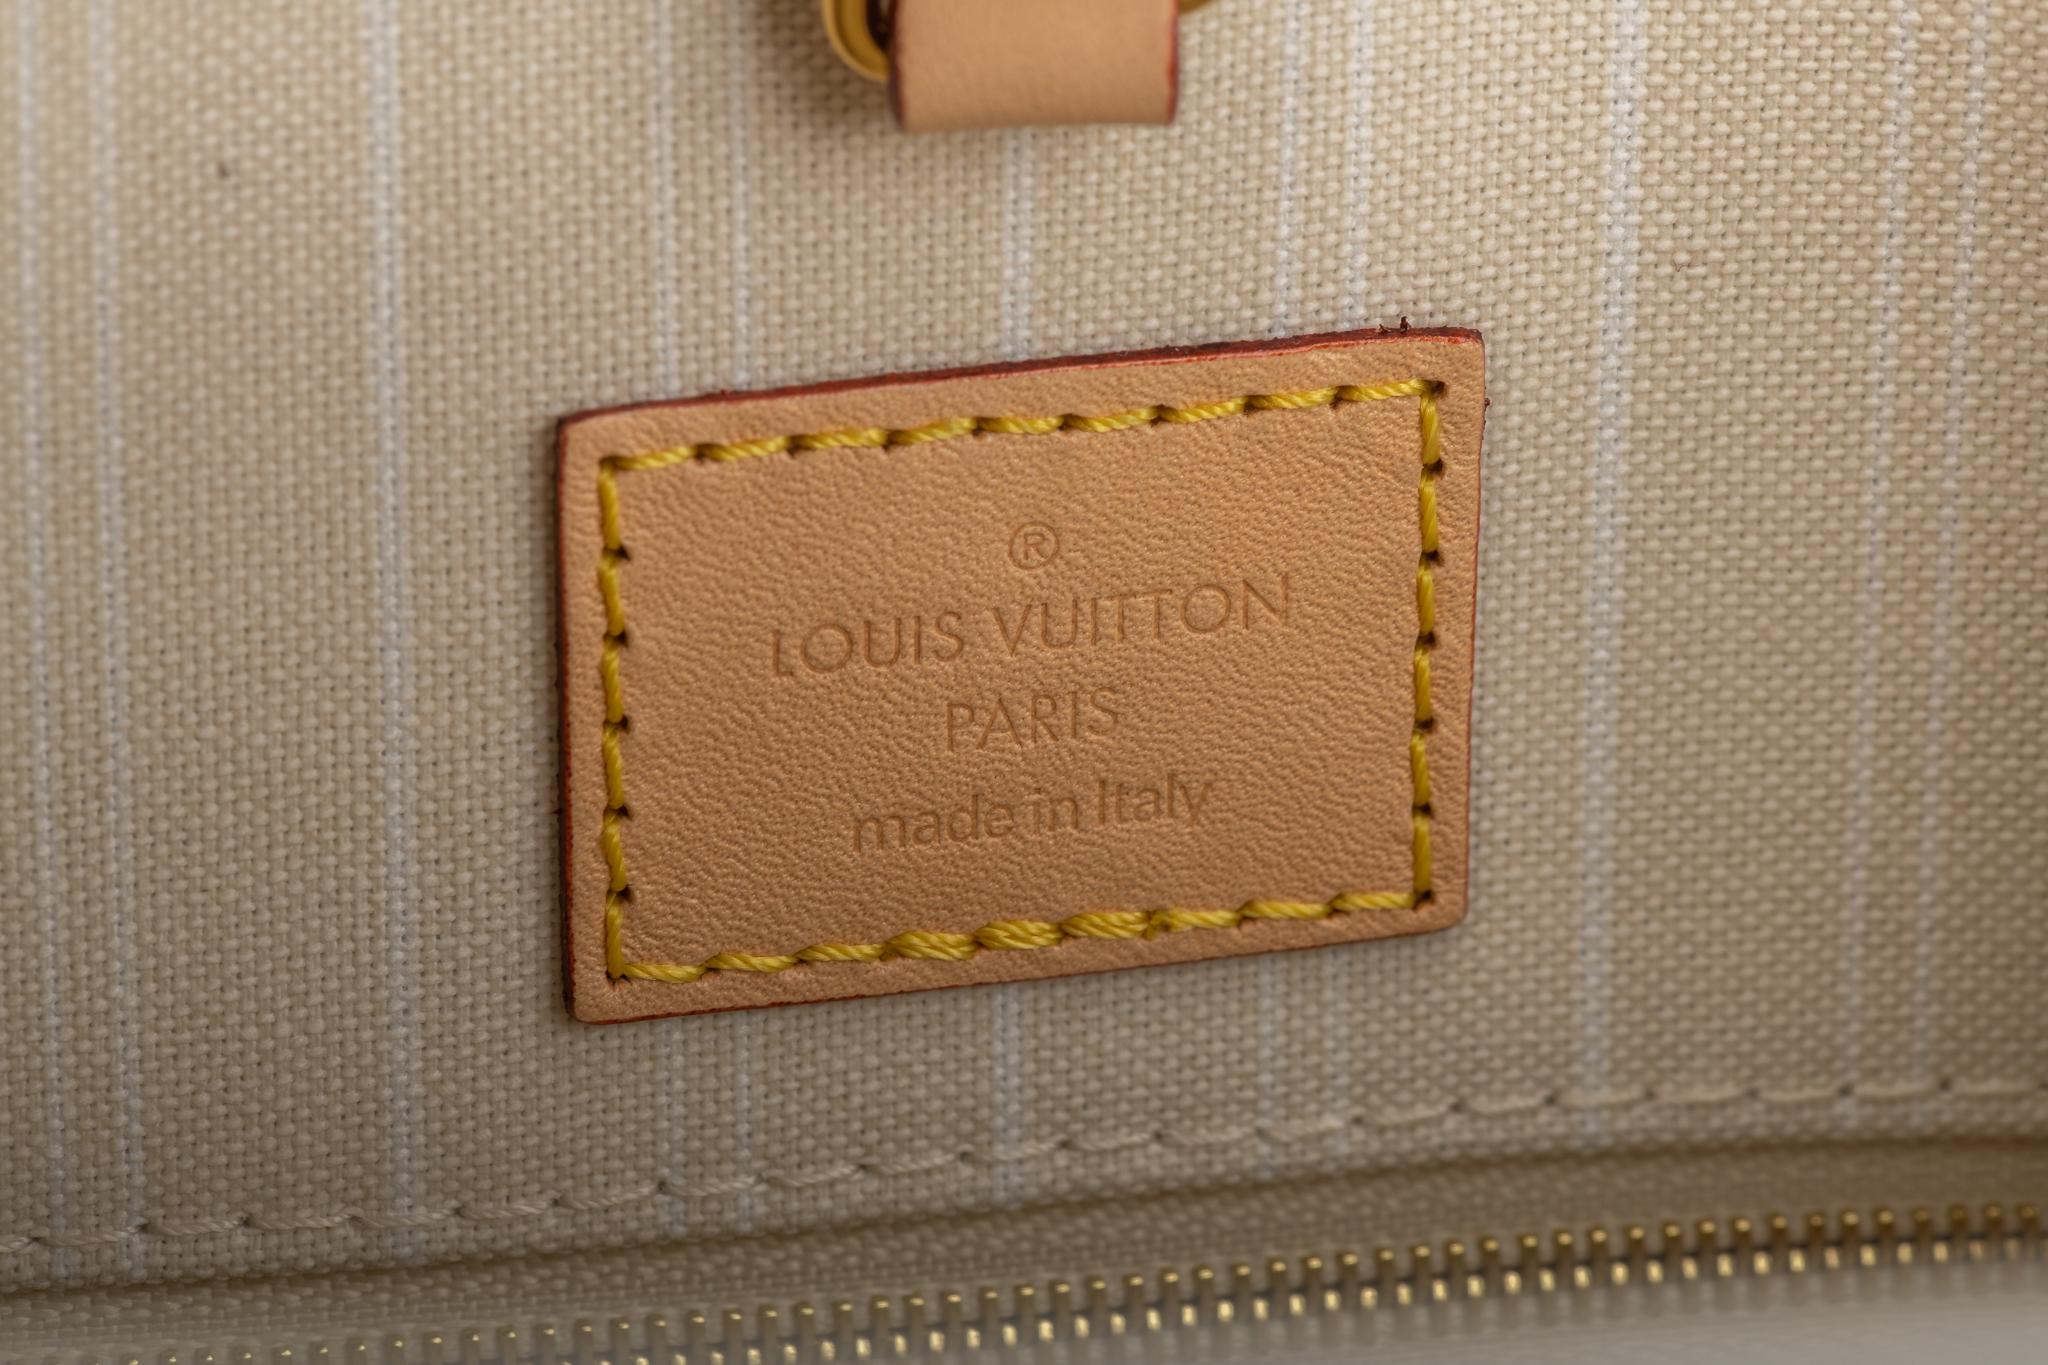 New Louis Vuitton 2021 On The Go Saint Tropez Bag 7